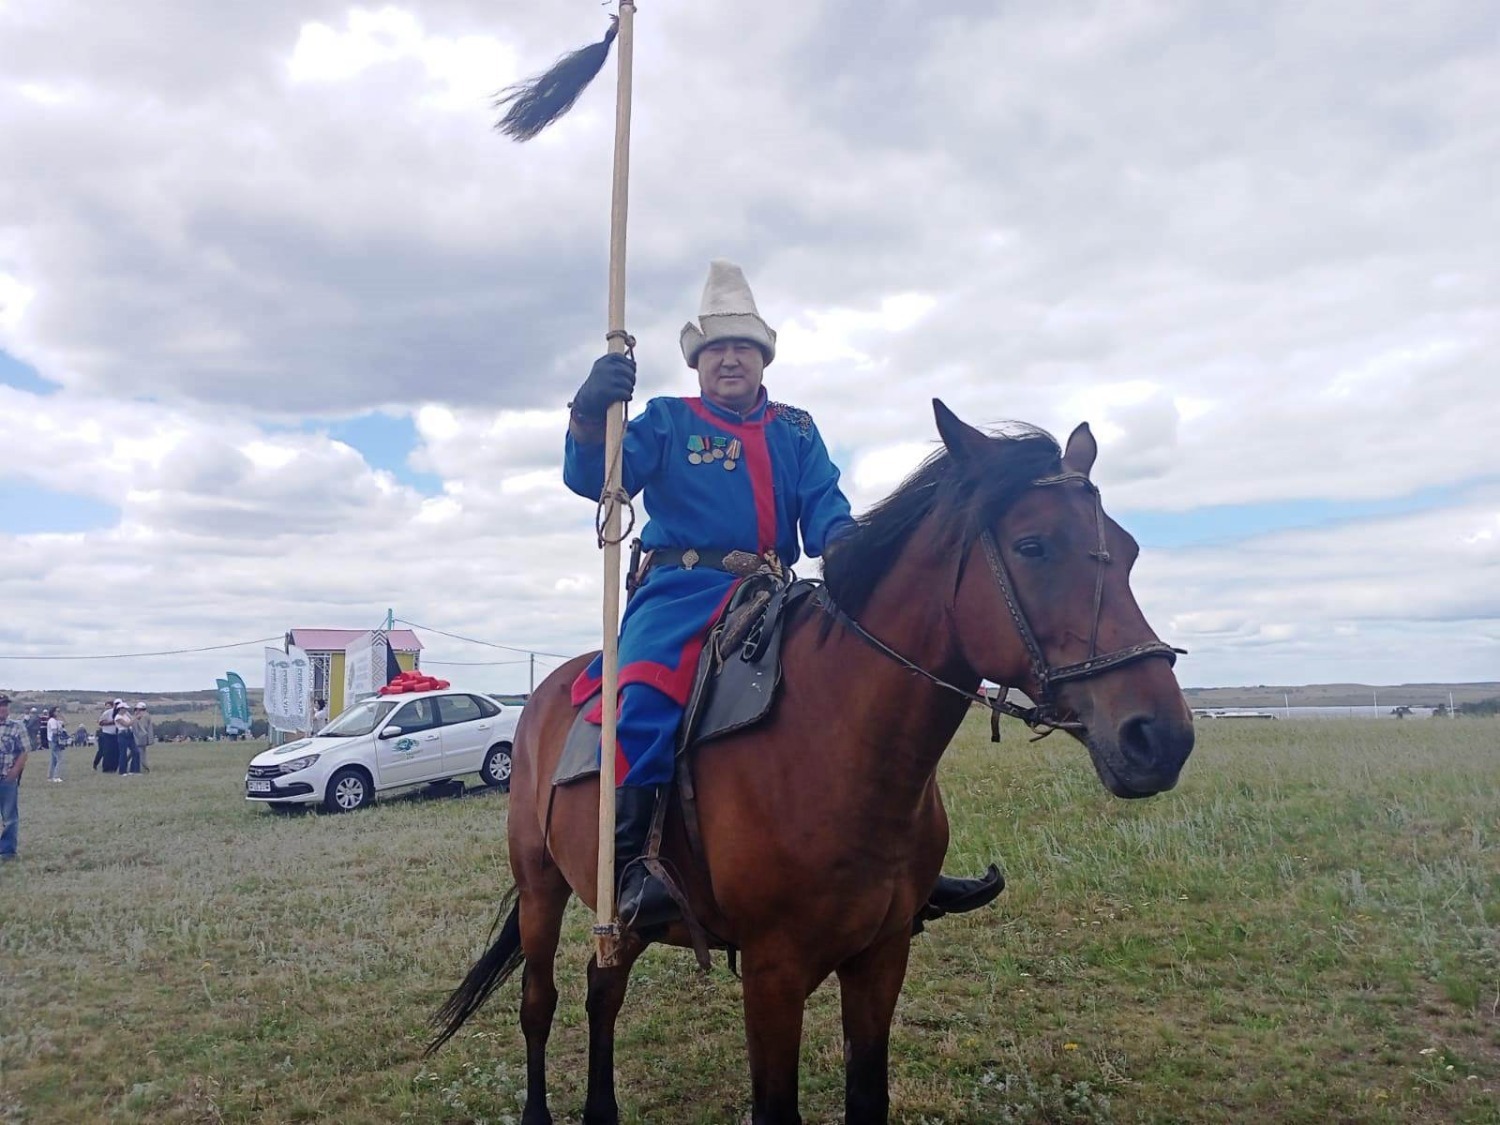 Около 500 участников из России и зарубежья собрал конный парад фестиваля «Башкорт аты»